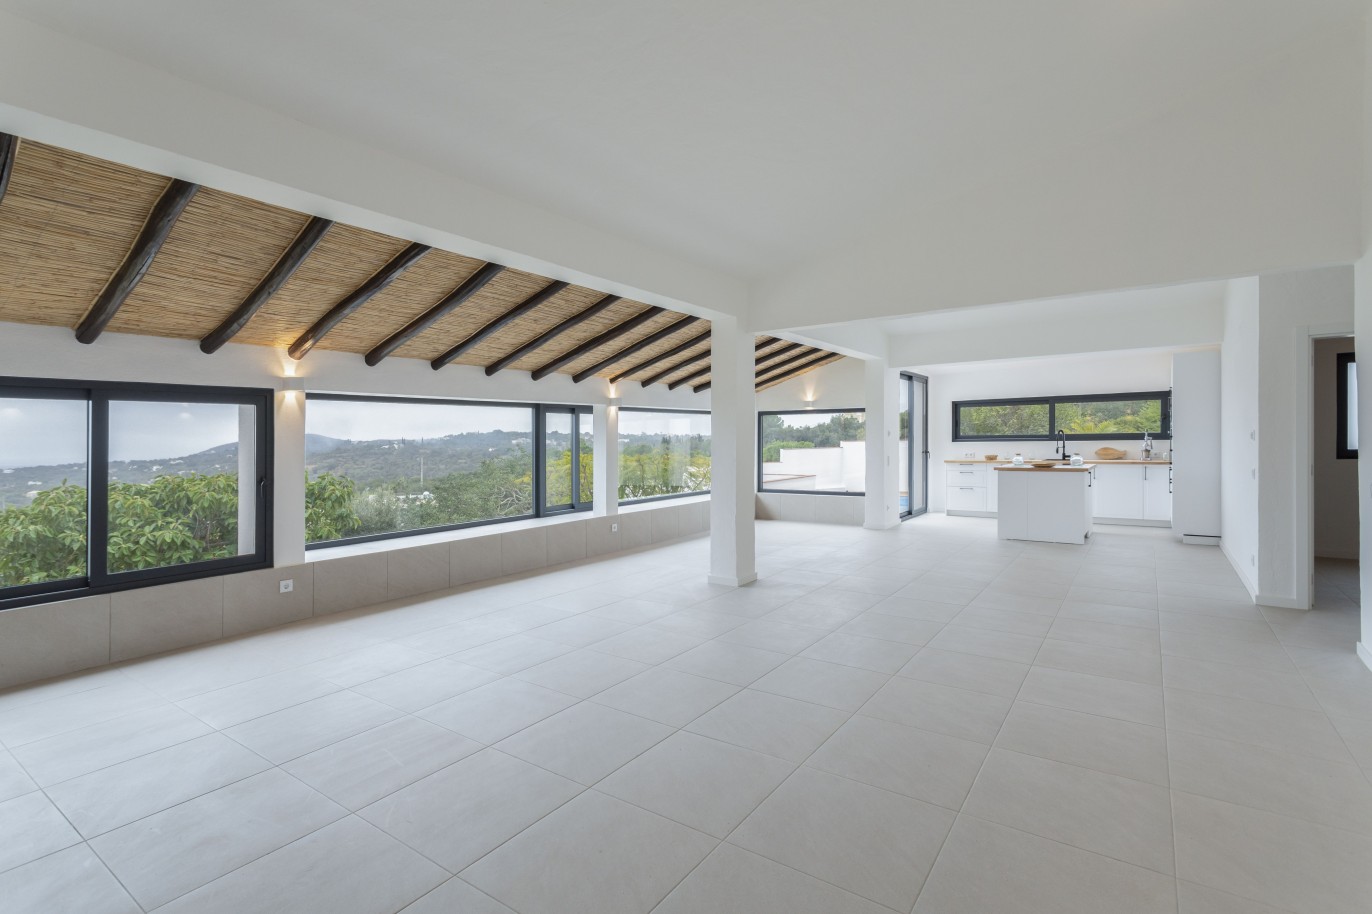 3 bedroom villa with sea view and pool, for sale in Santa Barbara, Algarve_245041